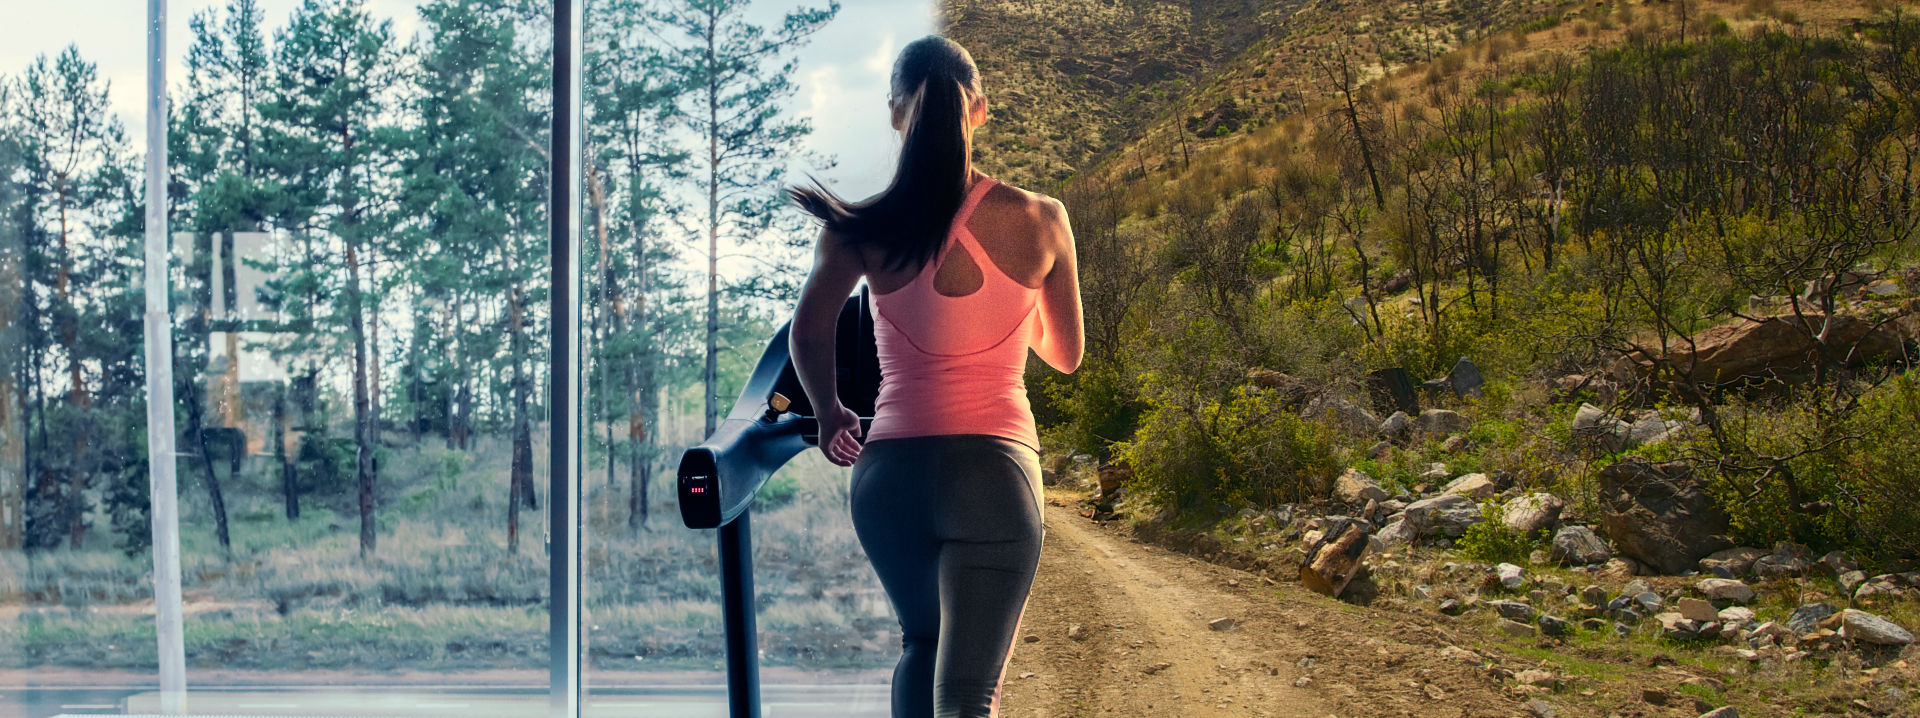 Tudsz hosszú távot futni az edzőteremben?